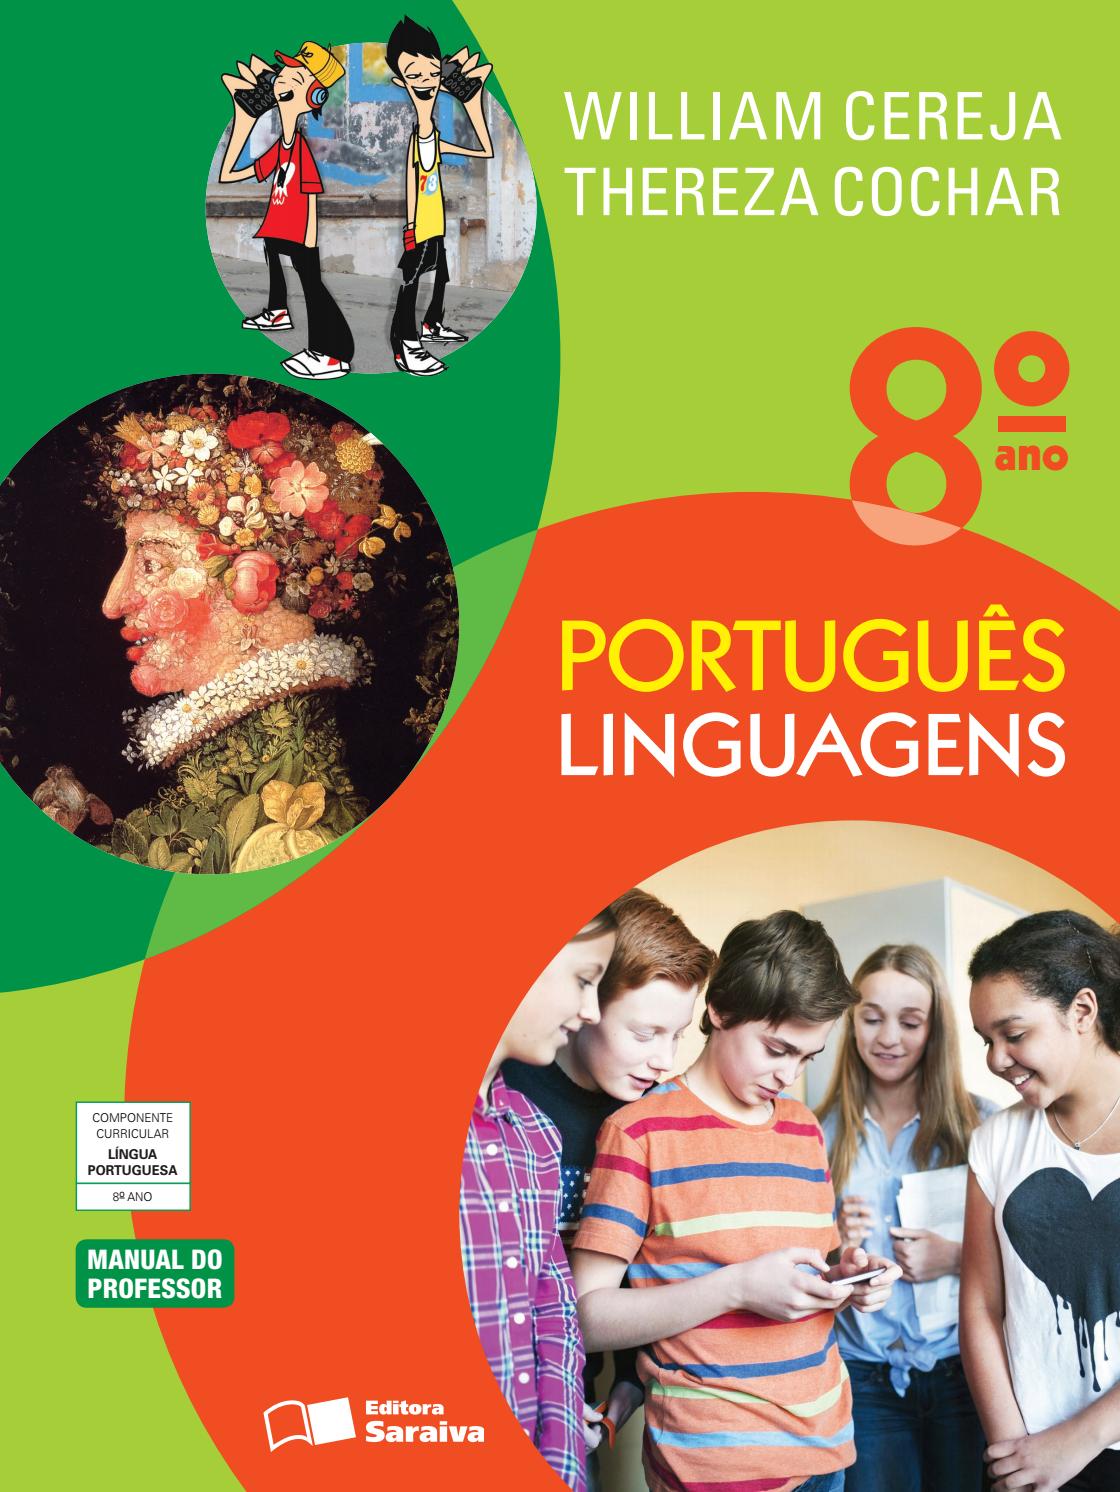 Português Linguagens 8ª ano